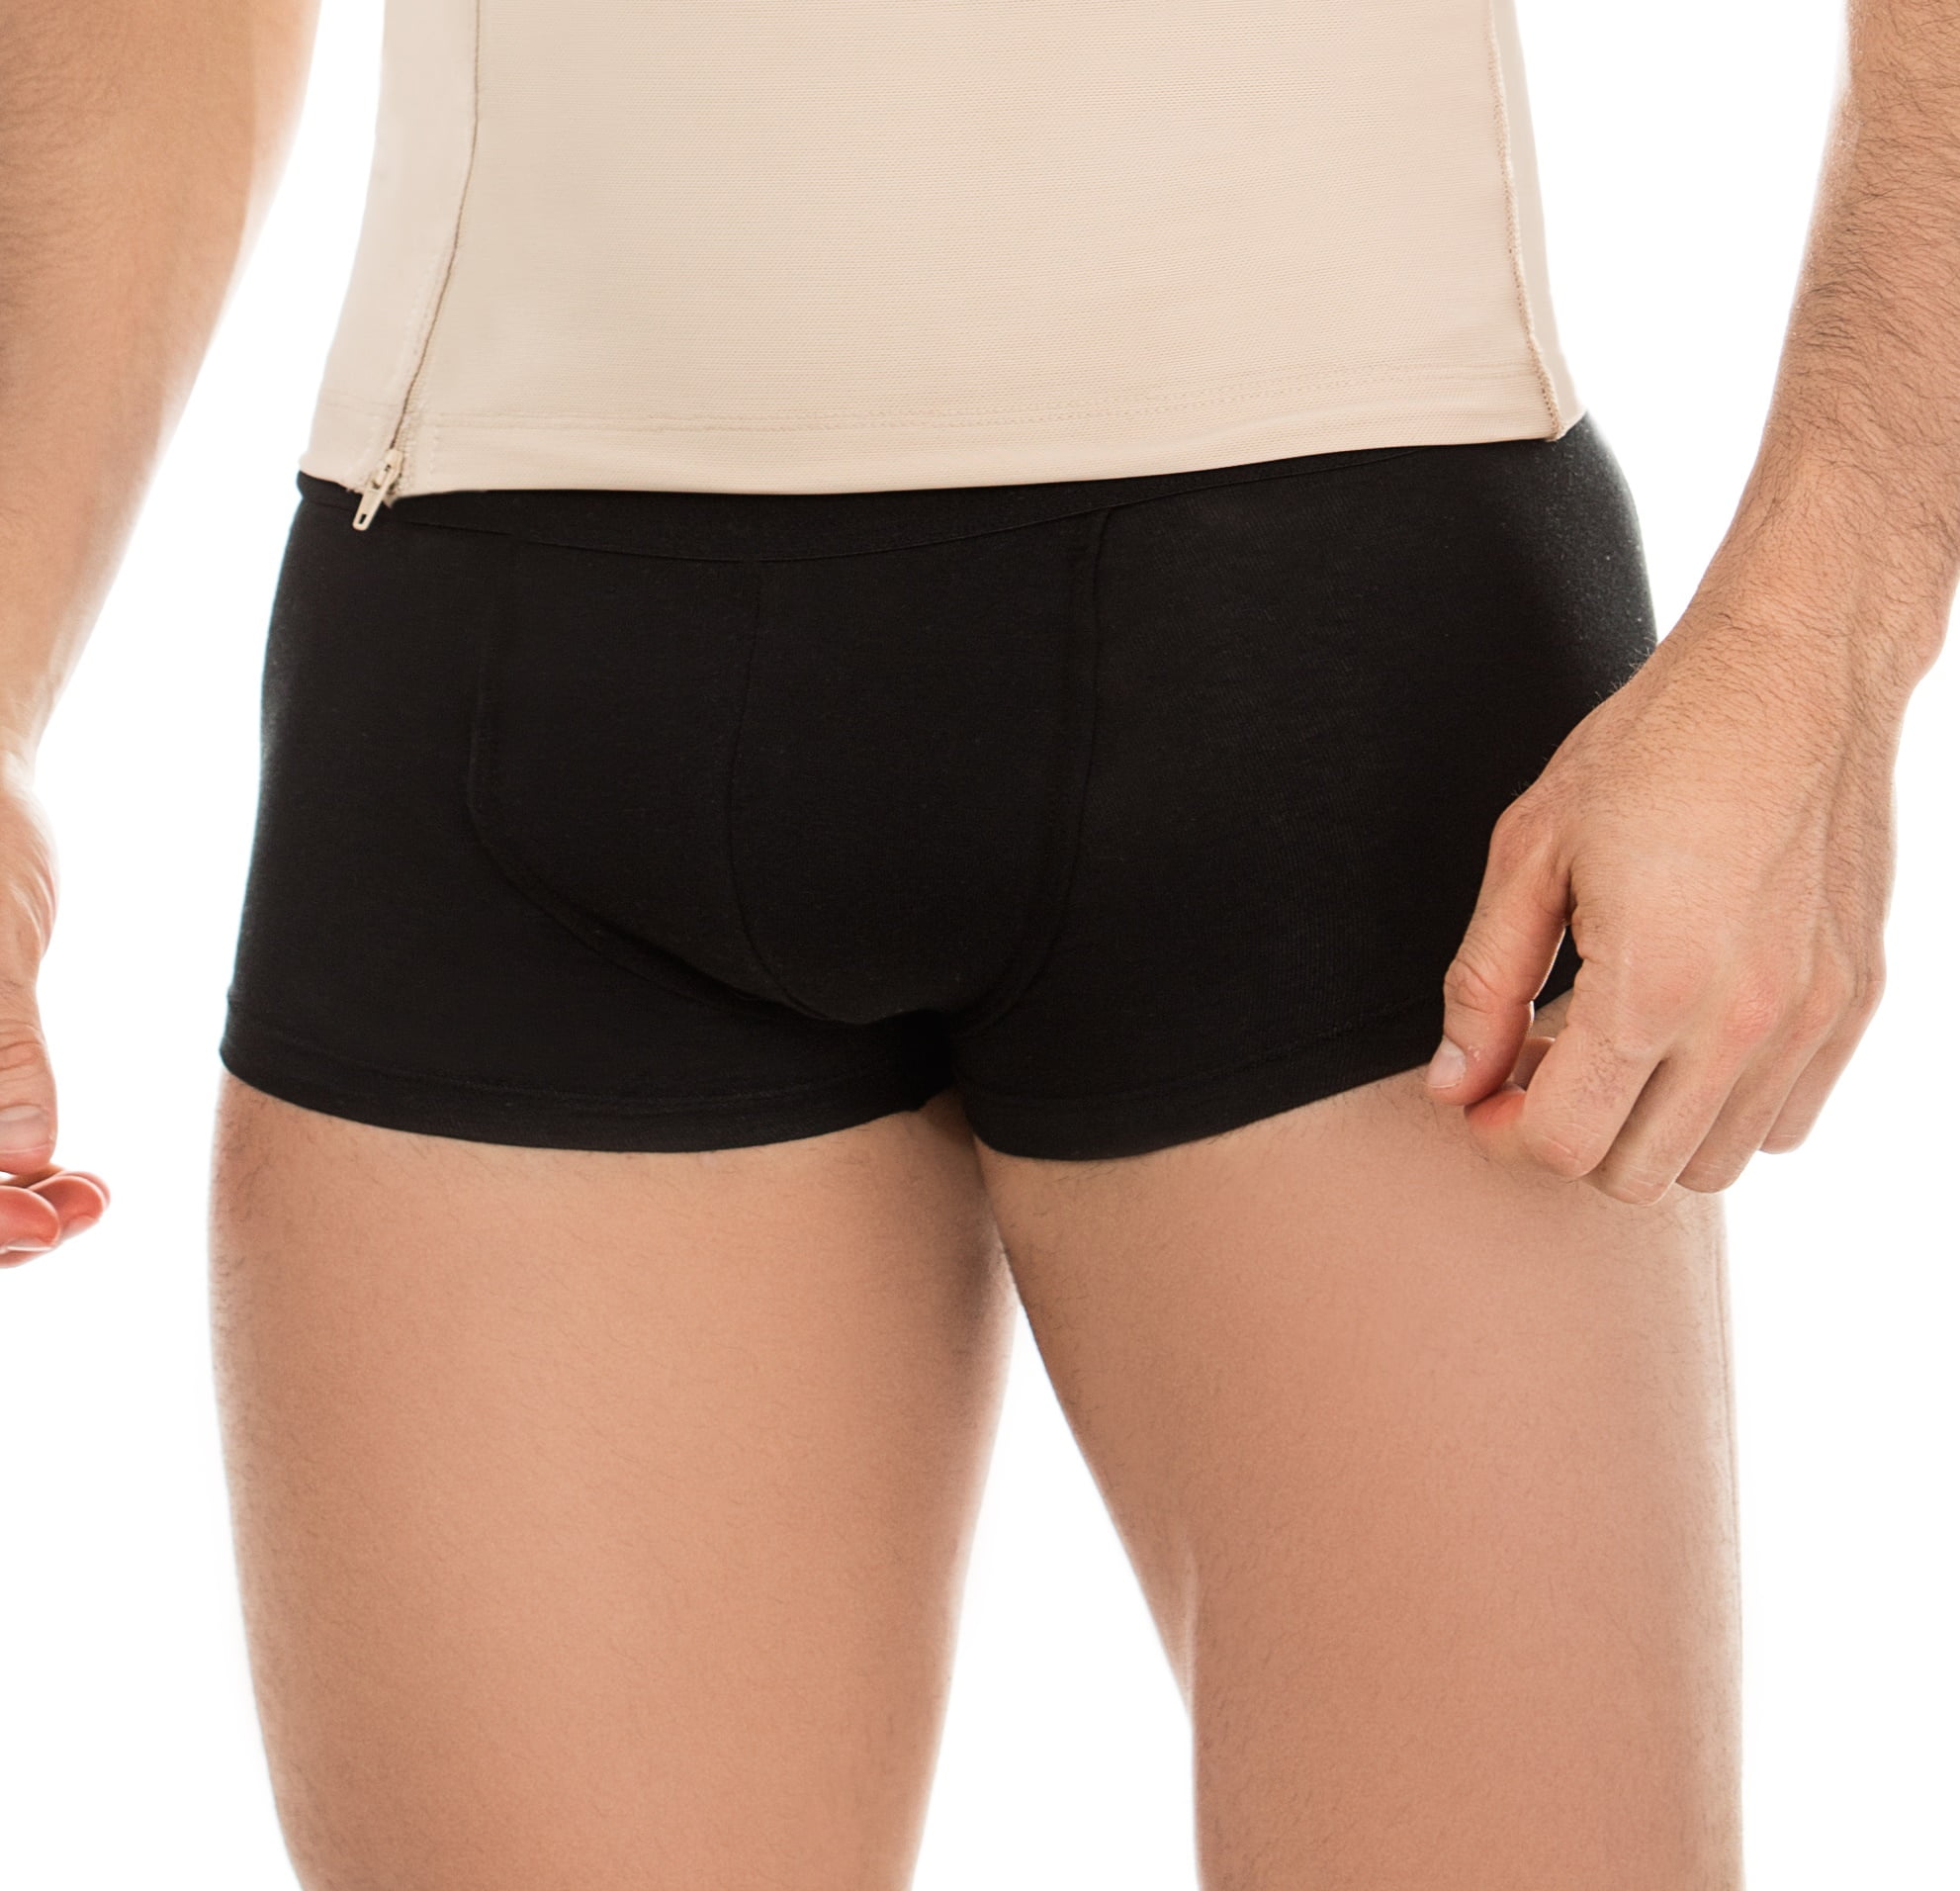 Shapewear & Fajas-The Best Faja Fresh and Light Faja Colombiana Moldeadora  - Men's Padded Panty Underwear 